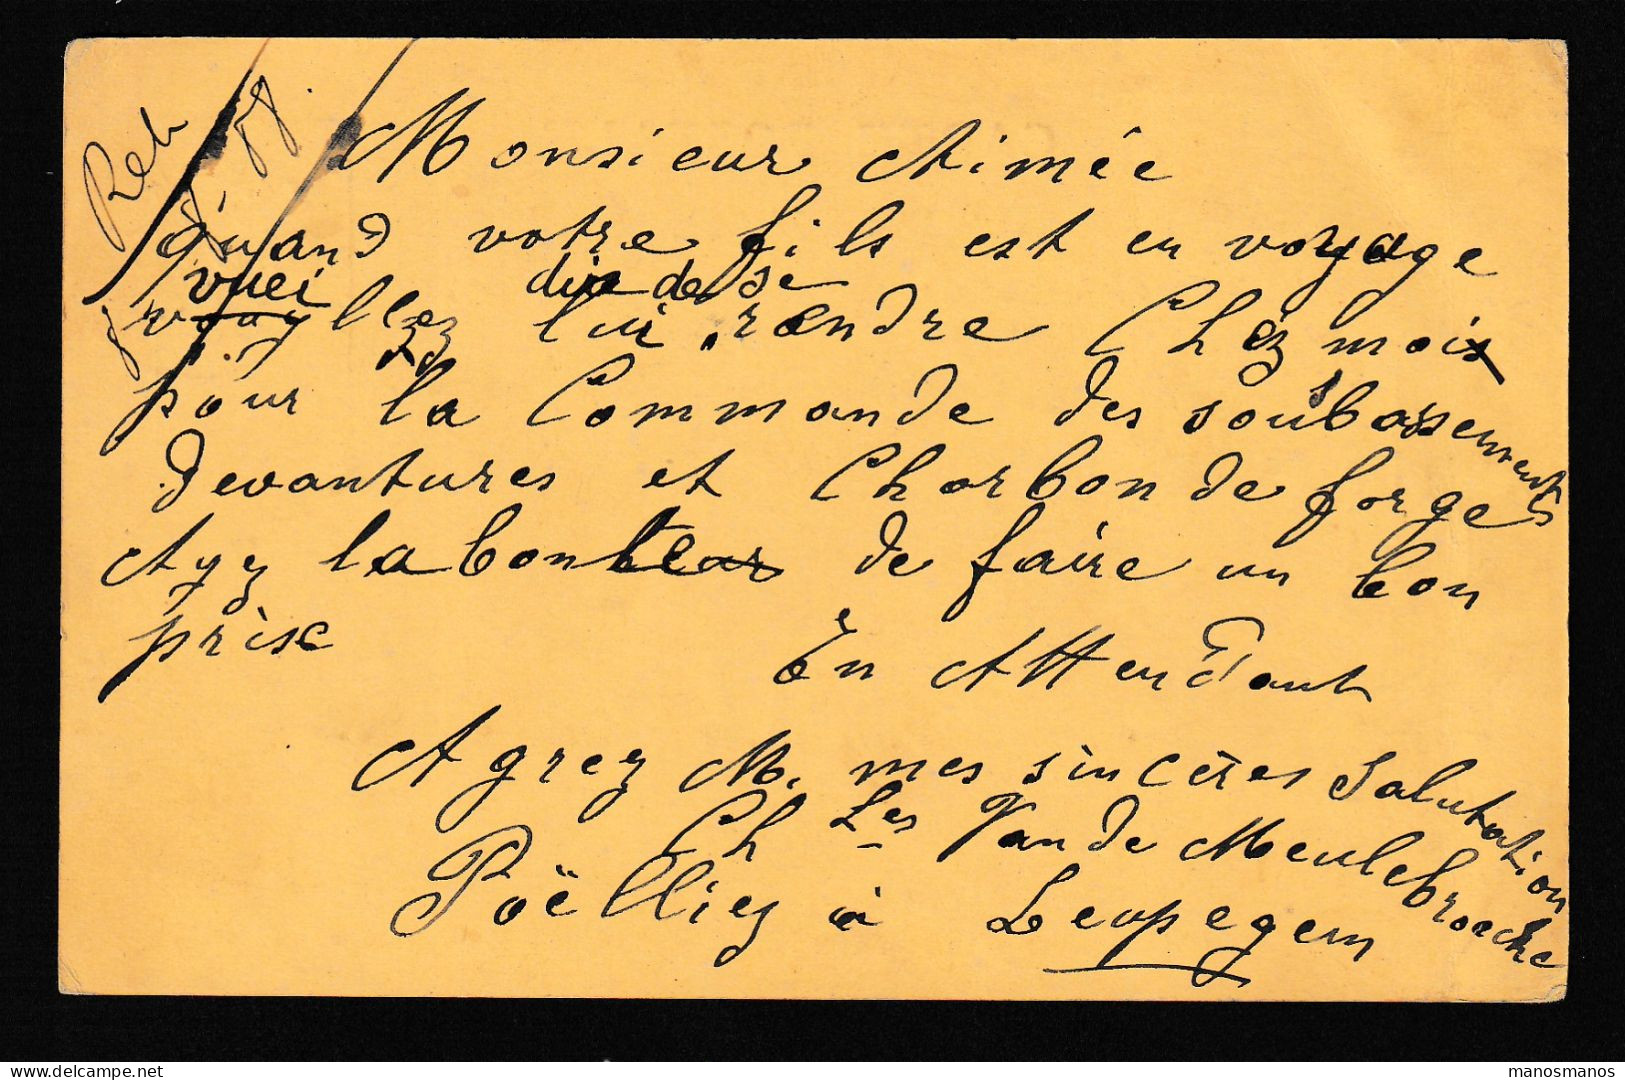 DDFF 564 -- AUDENARDE Entier Postal Armoiries 1908 Vers CHARLEROY - Expéditeur Van De Meulebroecke , Poelier à LEUPEGEM - Postcards 1871-1909